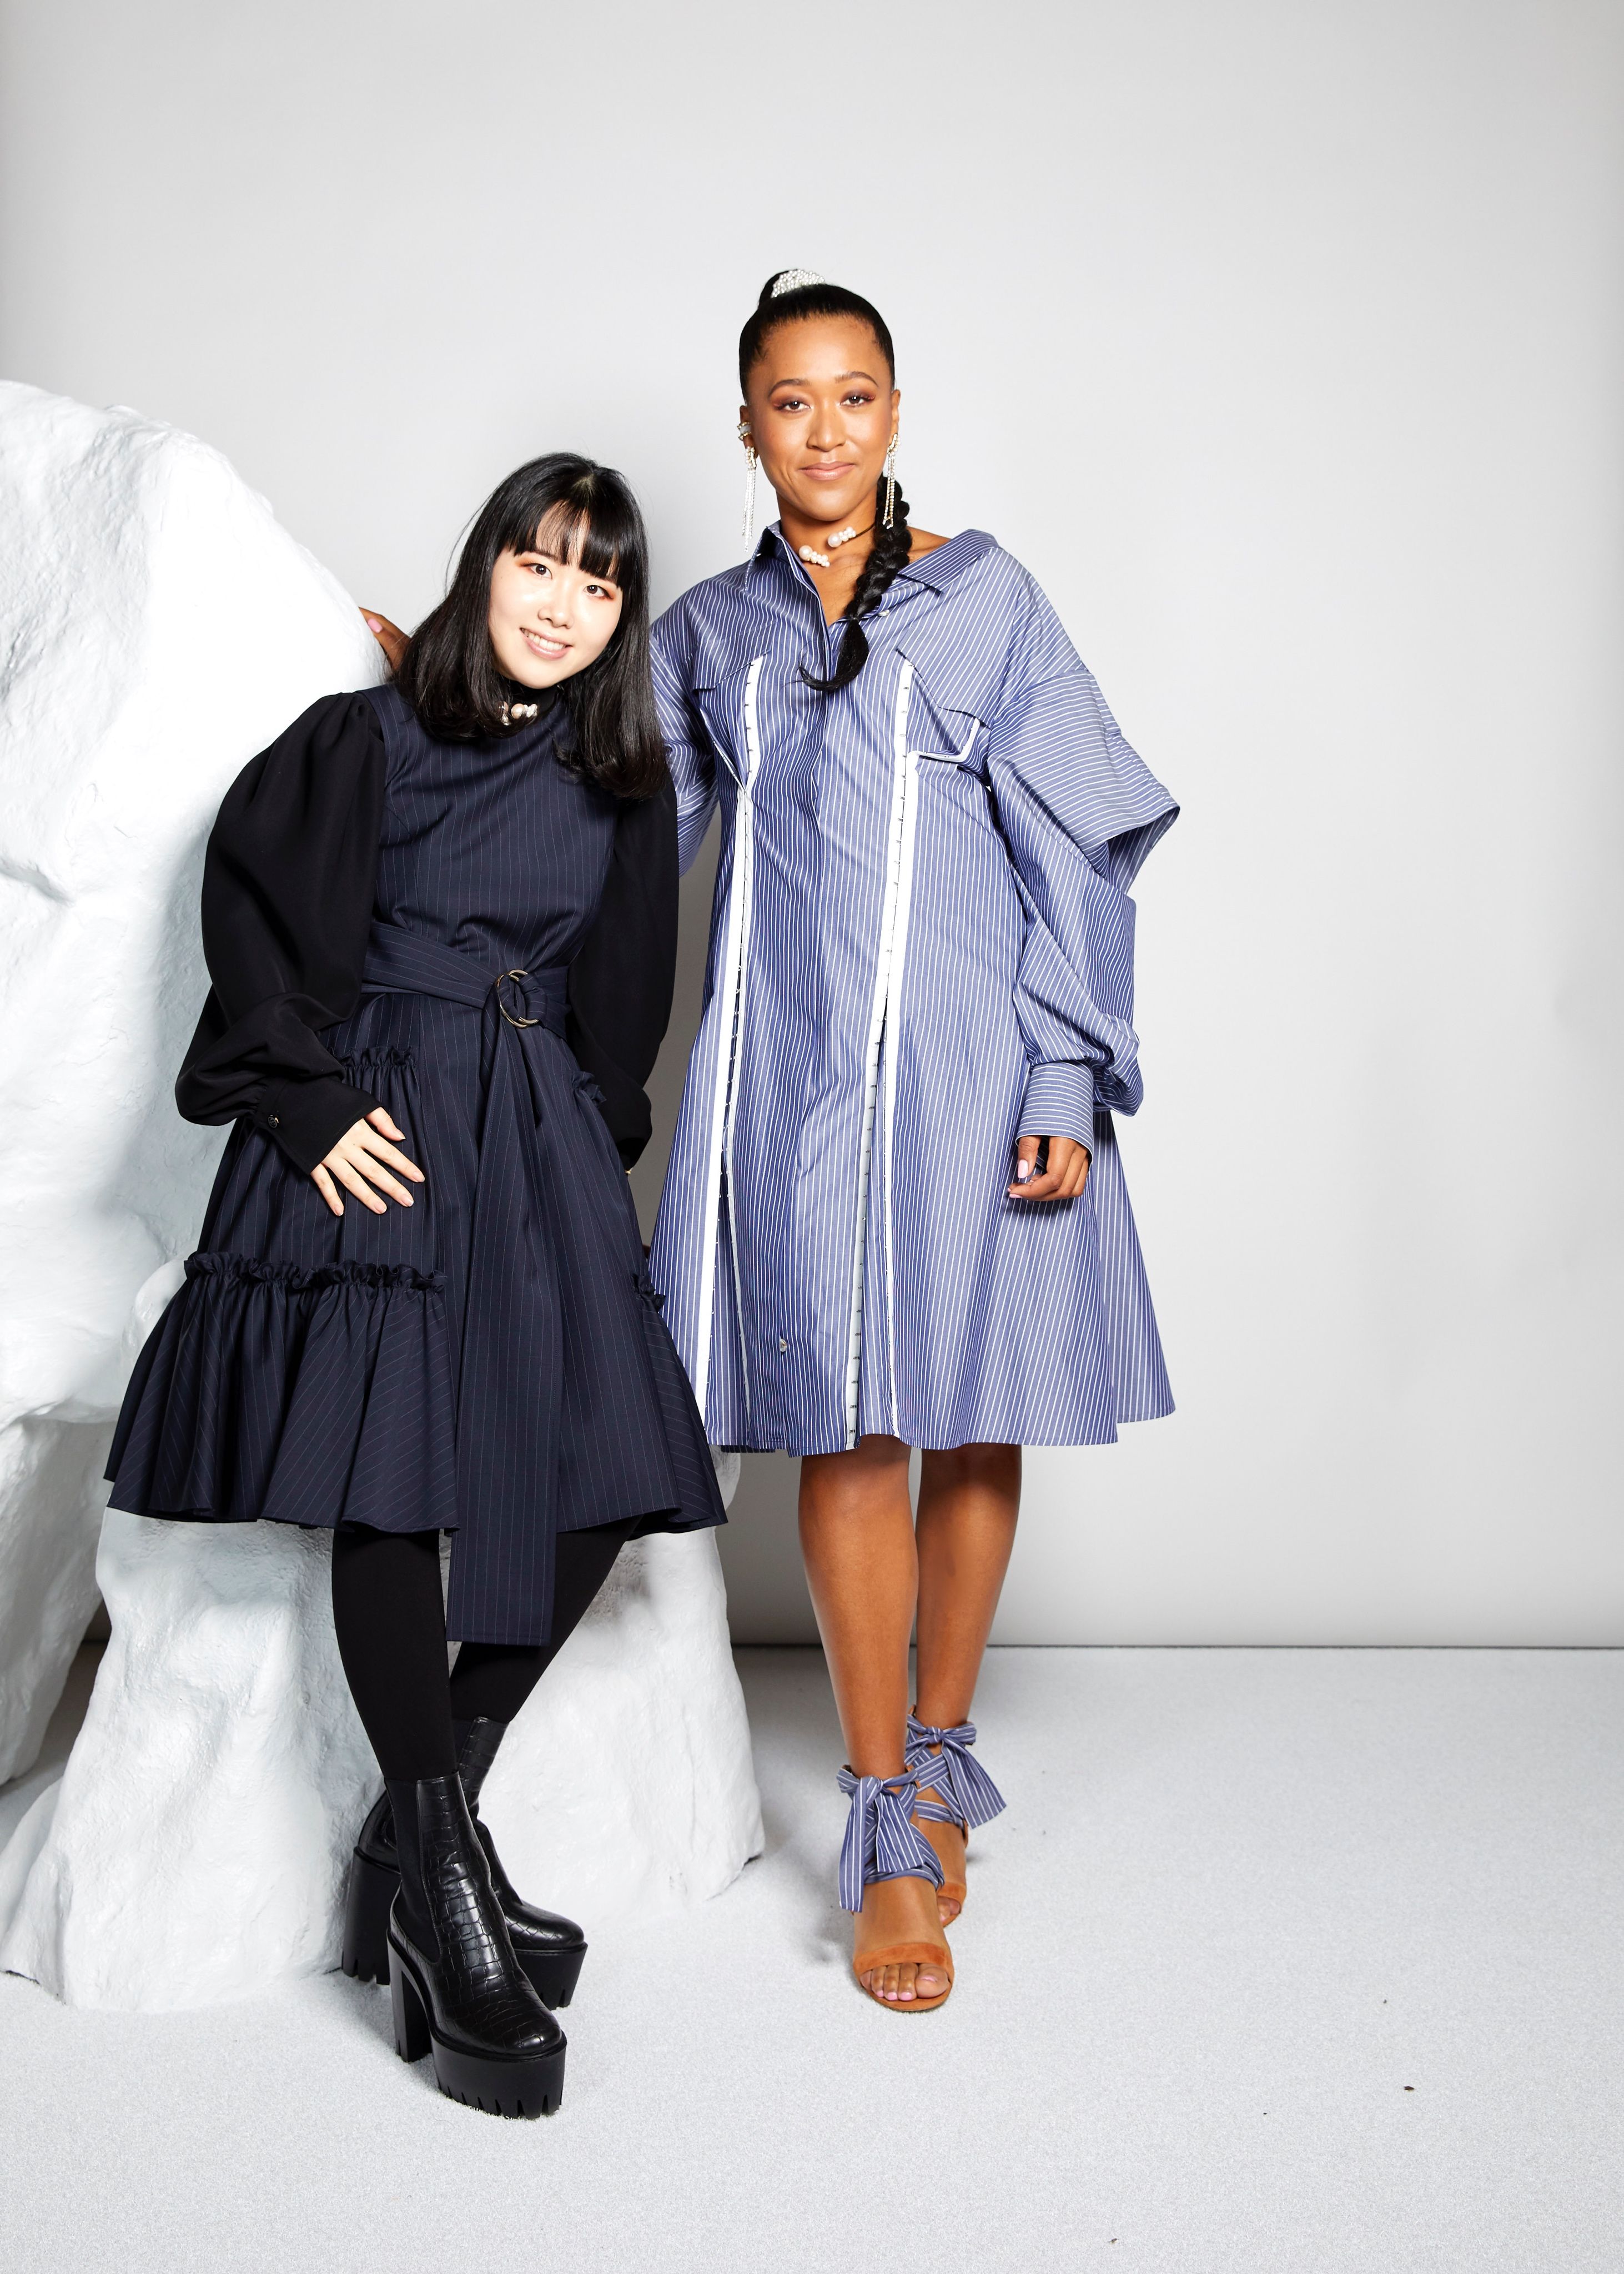 Naomi Osaka and ADEAM Collaborate at New York Fashion Week